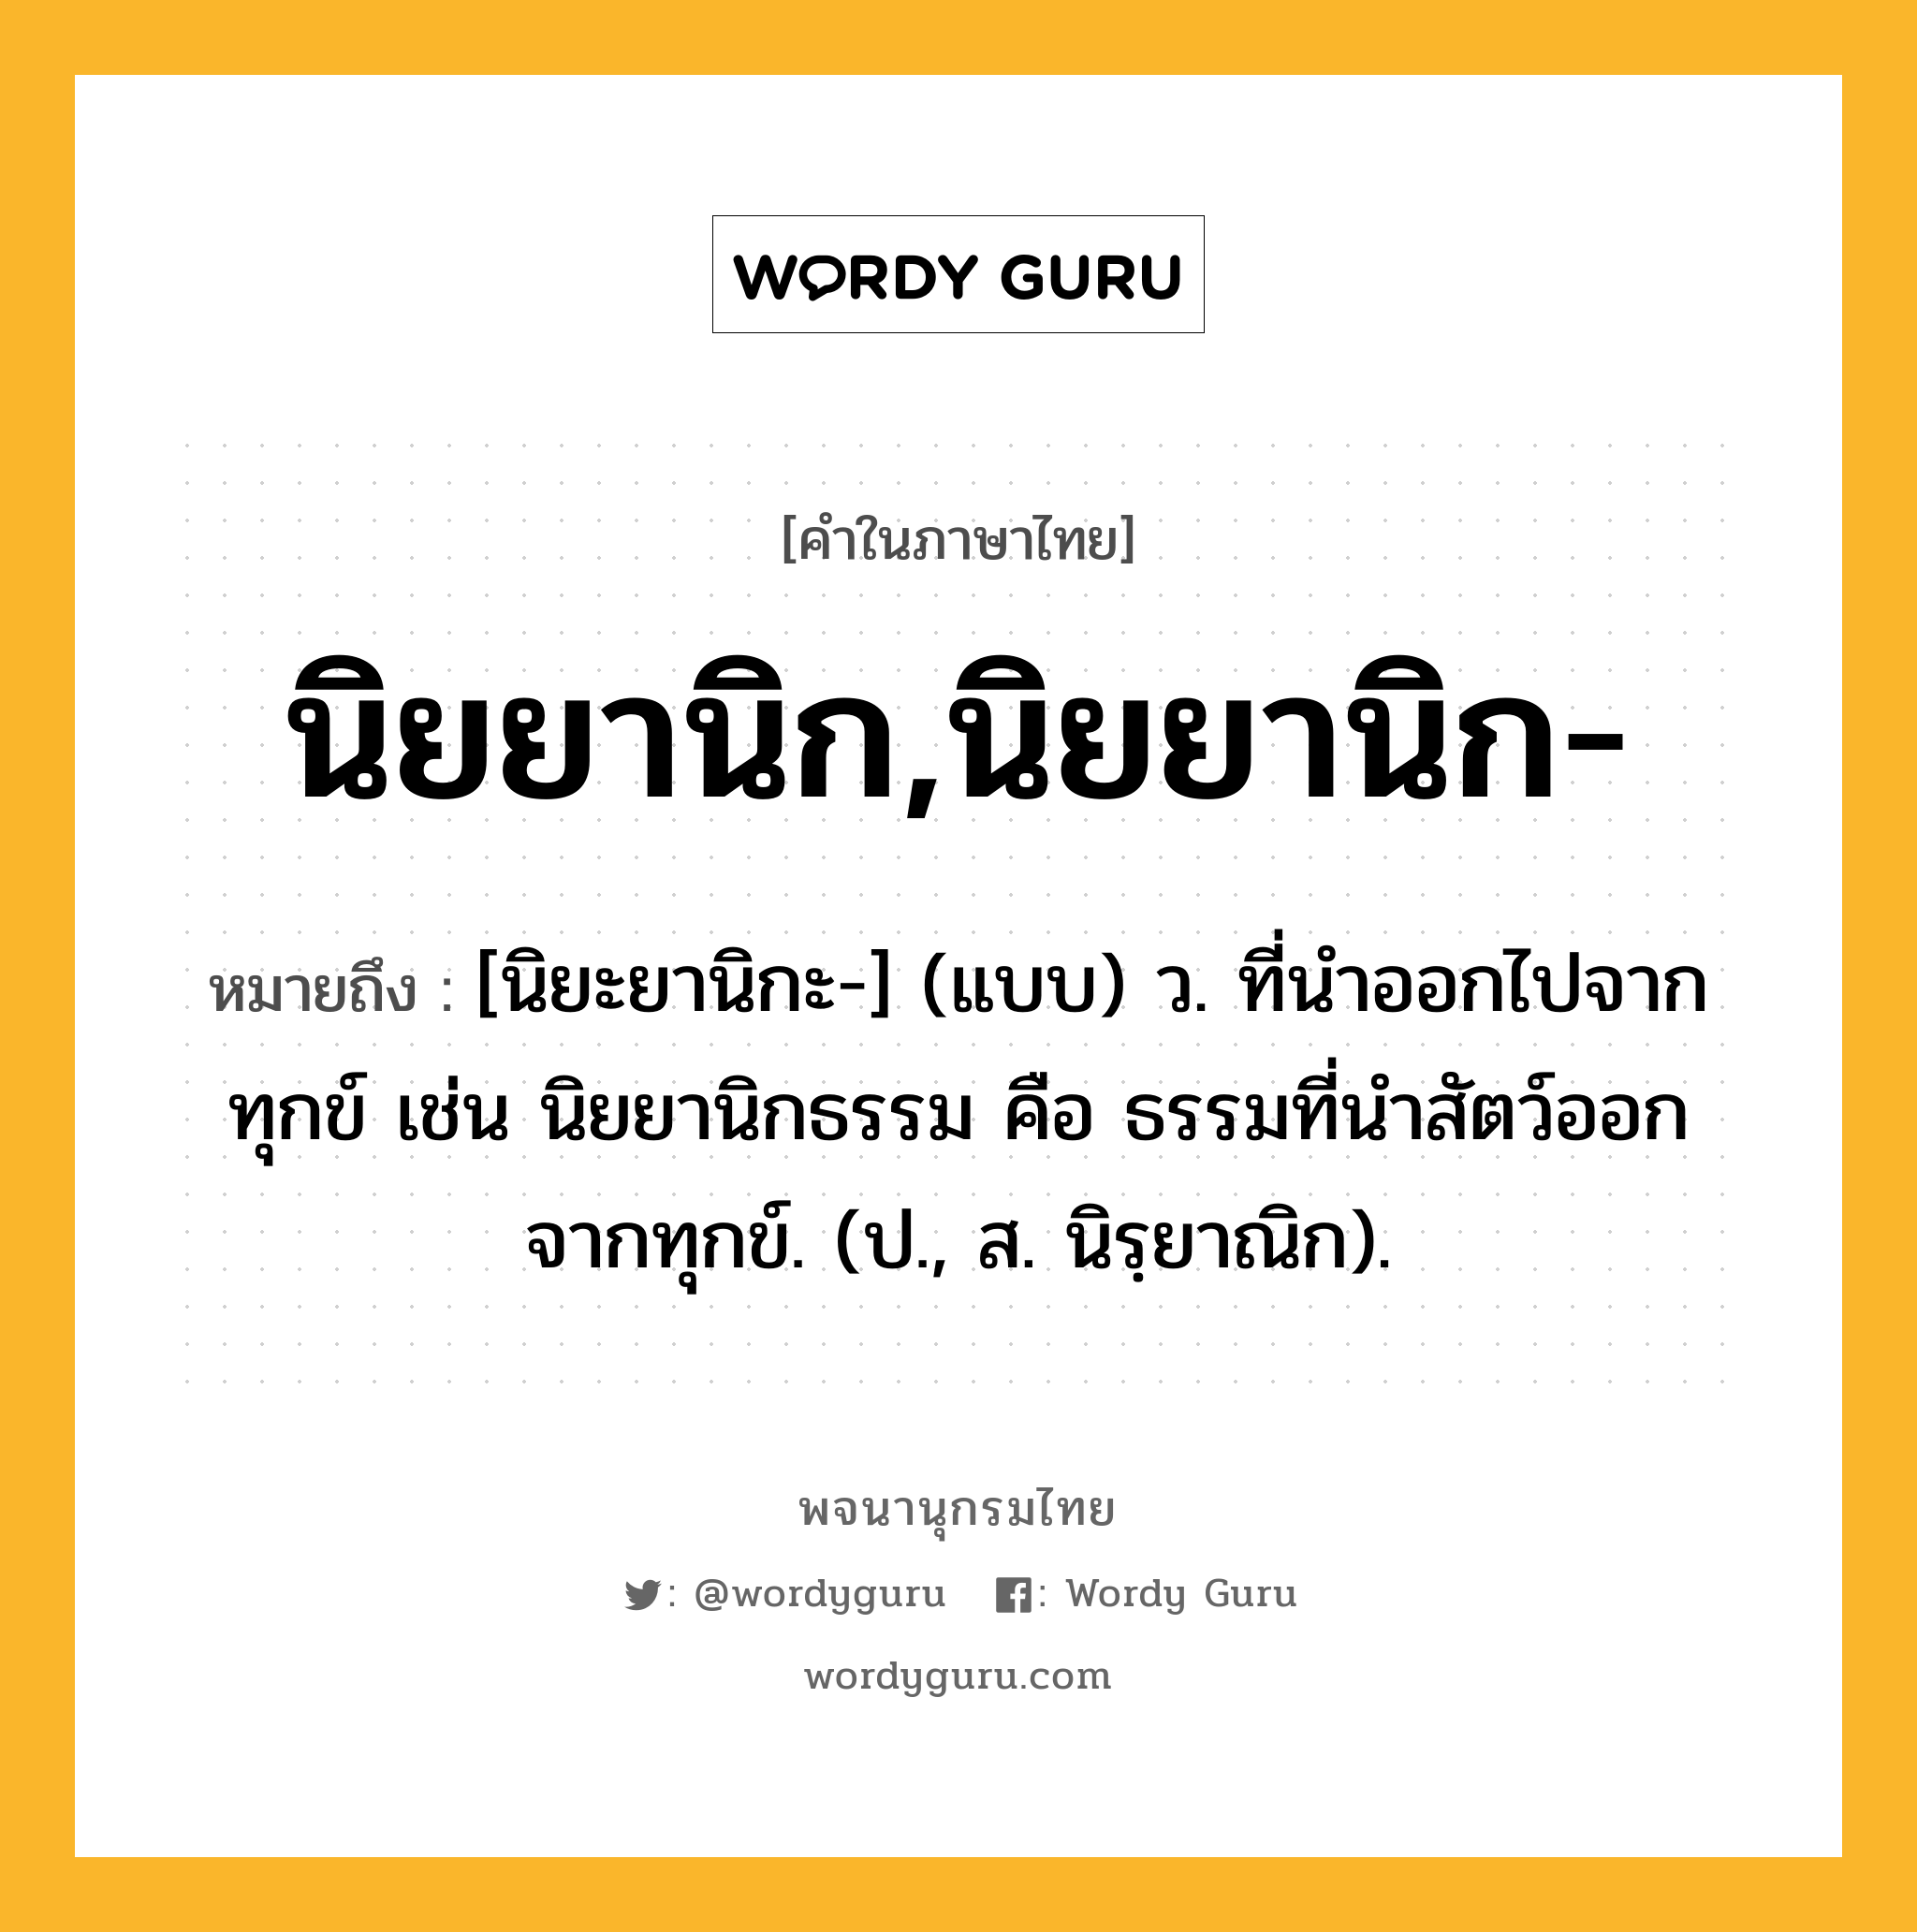 นิยยานิก,นิยยานิก- หมายถึงอะไร?, คำในภาษาไทย นิยยานิก,นิยยานิก- หมายถึง [นิยะยานิกะ-] (แบบ) ว. ที่นําออกไปจากทุกข์ เช่น นิยยานิกธรรม คือ ธรรมที่นําสัตว์ออกจากทุกข์. (ป., ส. นิรฺยาณิก).